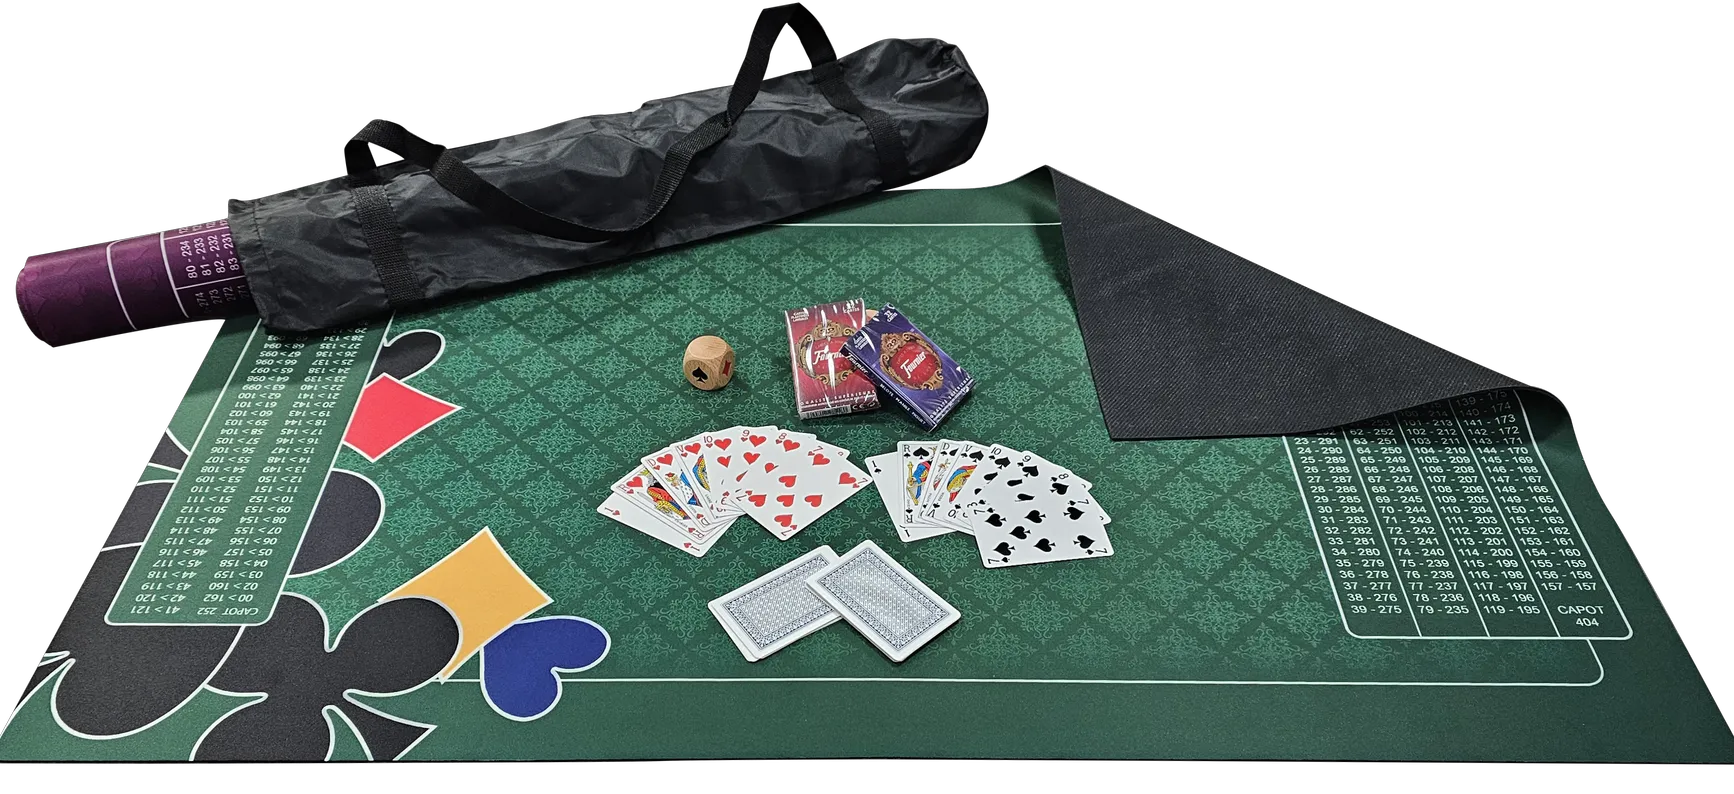 Tapis de luxe pour jeux de cartes belote 60 x 40cm